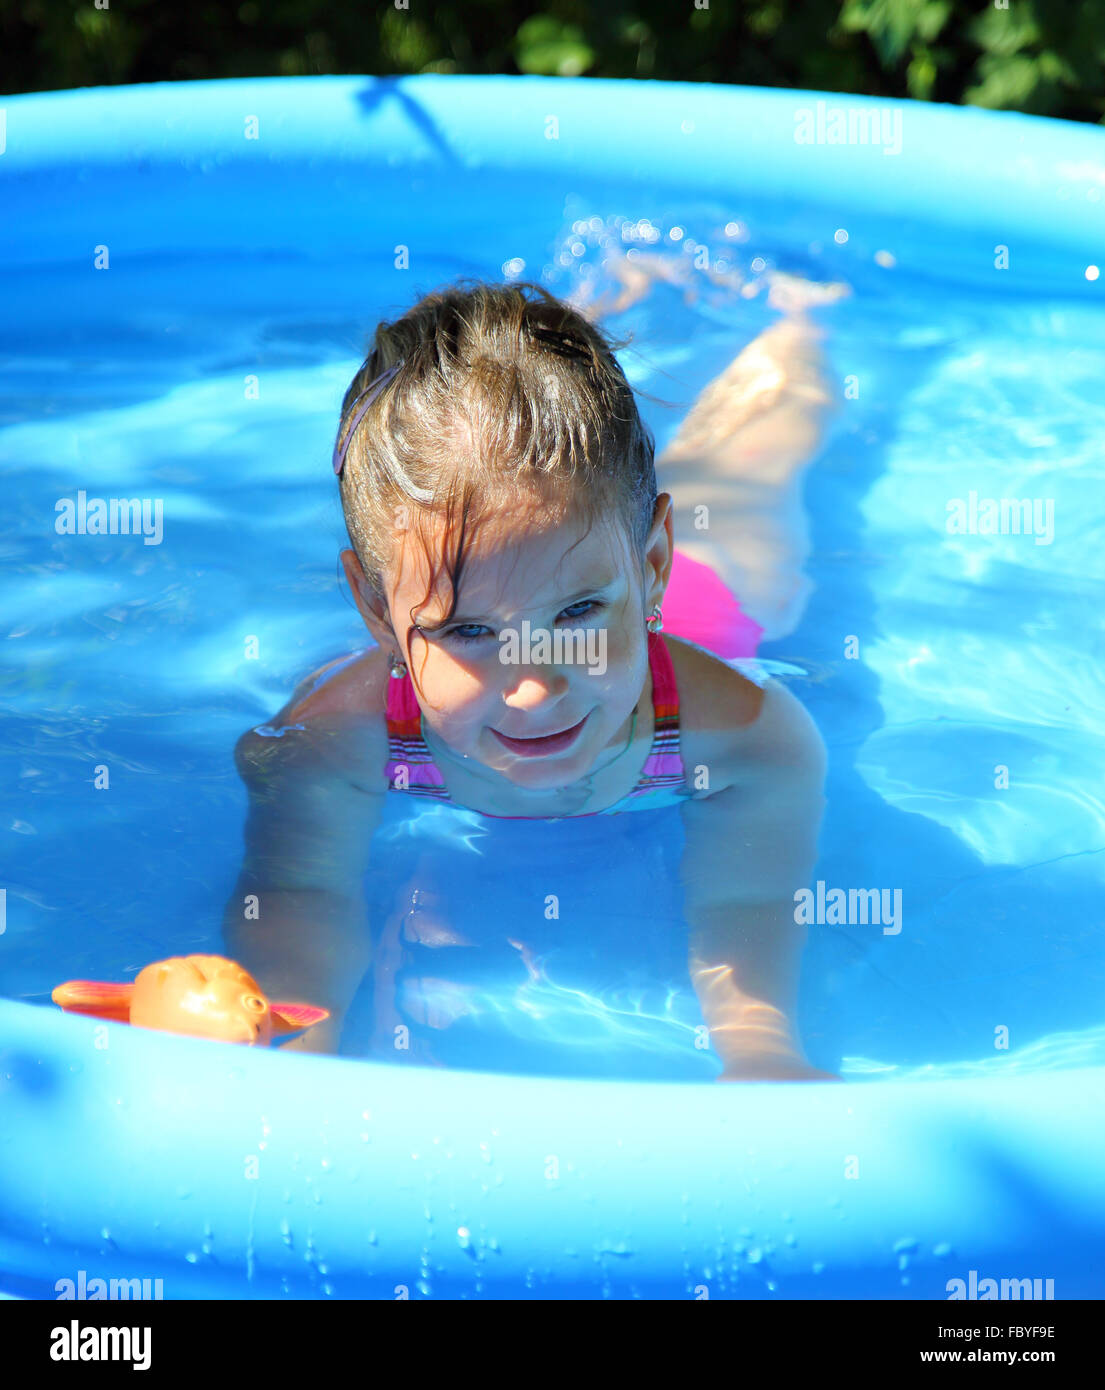 Маленькие купается бассейне. Девочка купается в бассейне. Девочка в надувном бассейне. Девочка купается в надувном бассейне. Дети купаются в надувном бассейне.